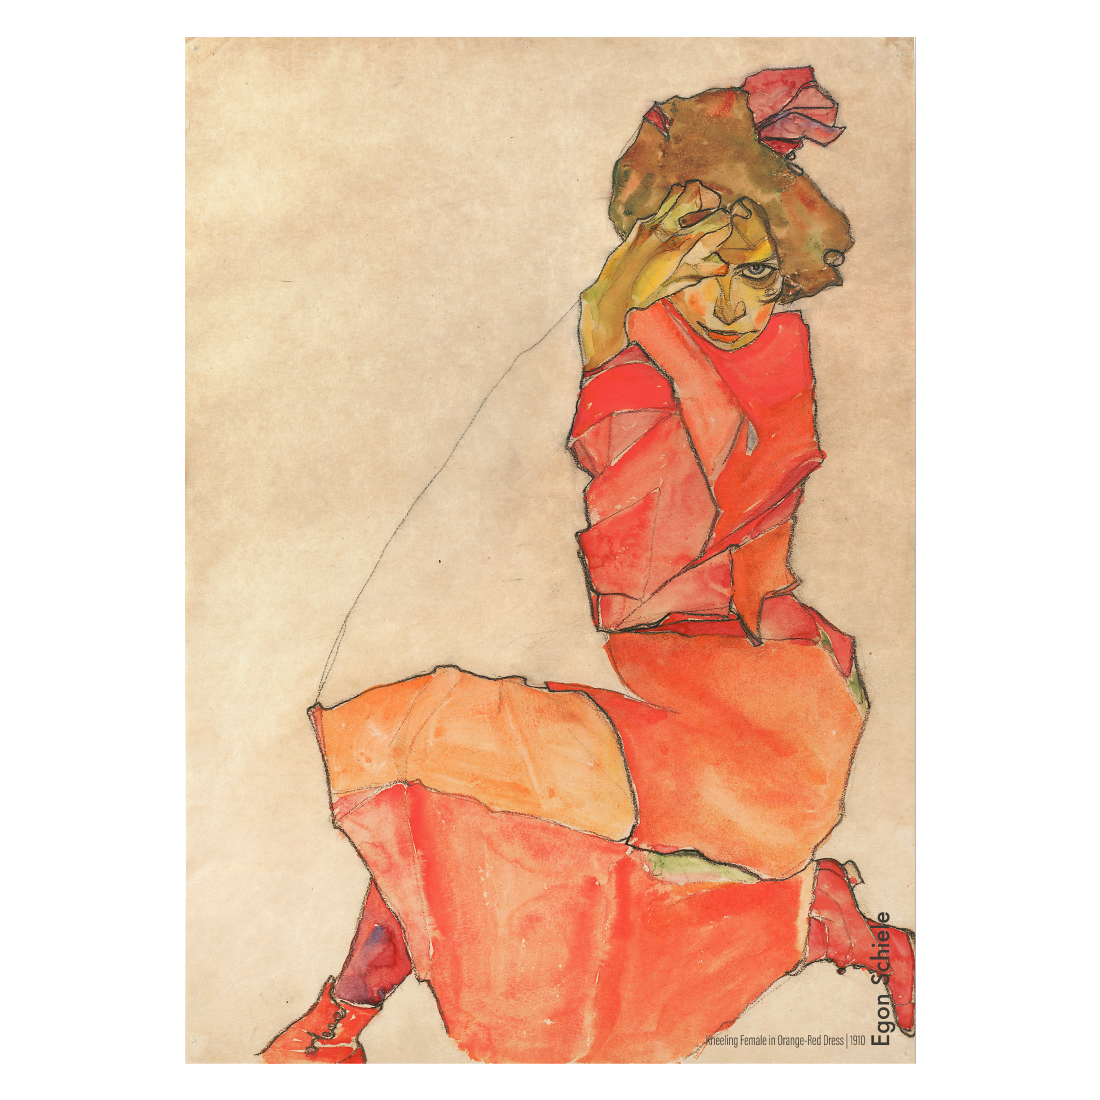 Lærredsbillede med Egon Schieles "Kneeling female in orange red dress"